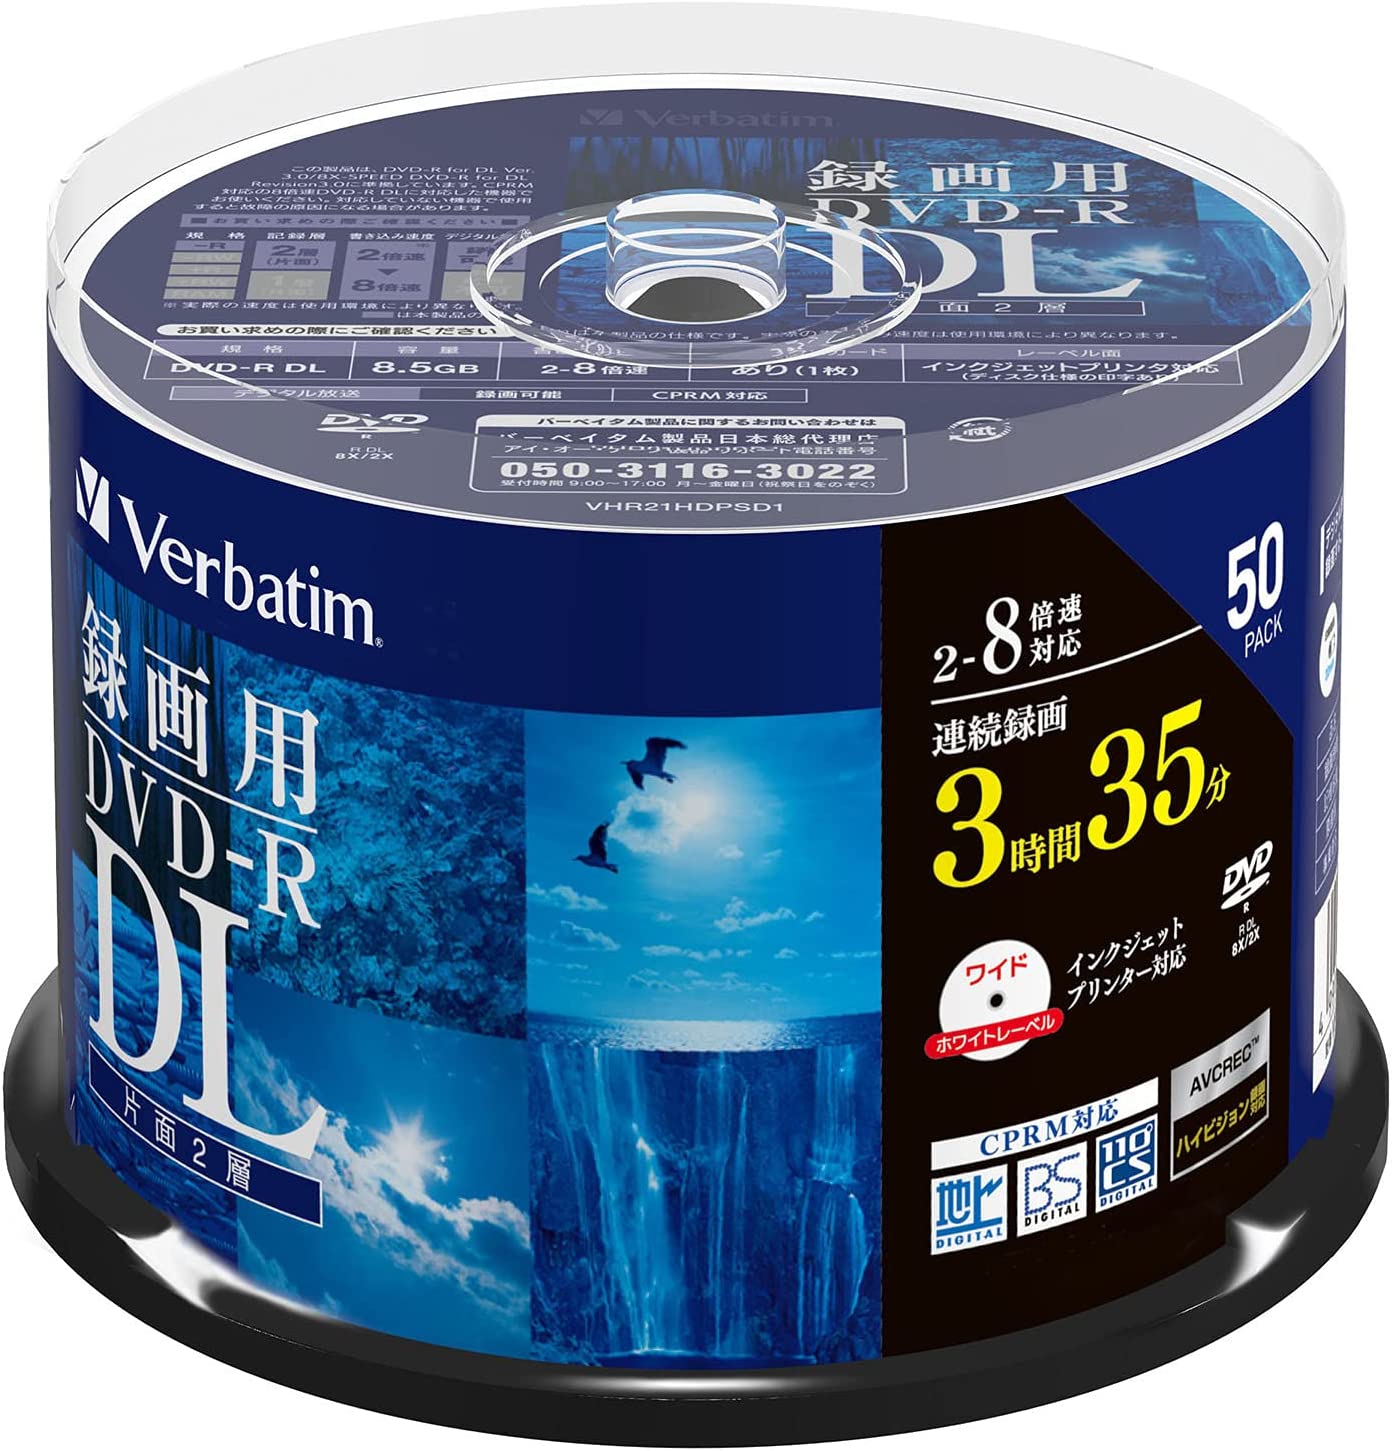 Verbatim バーベイタム 1回録画用 DVD-R DL CPRM 215分 50枚 ホワイトプリンタブル 片面2層 2-8倍速 VH..